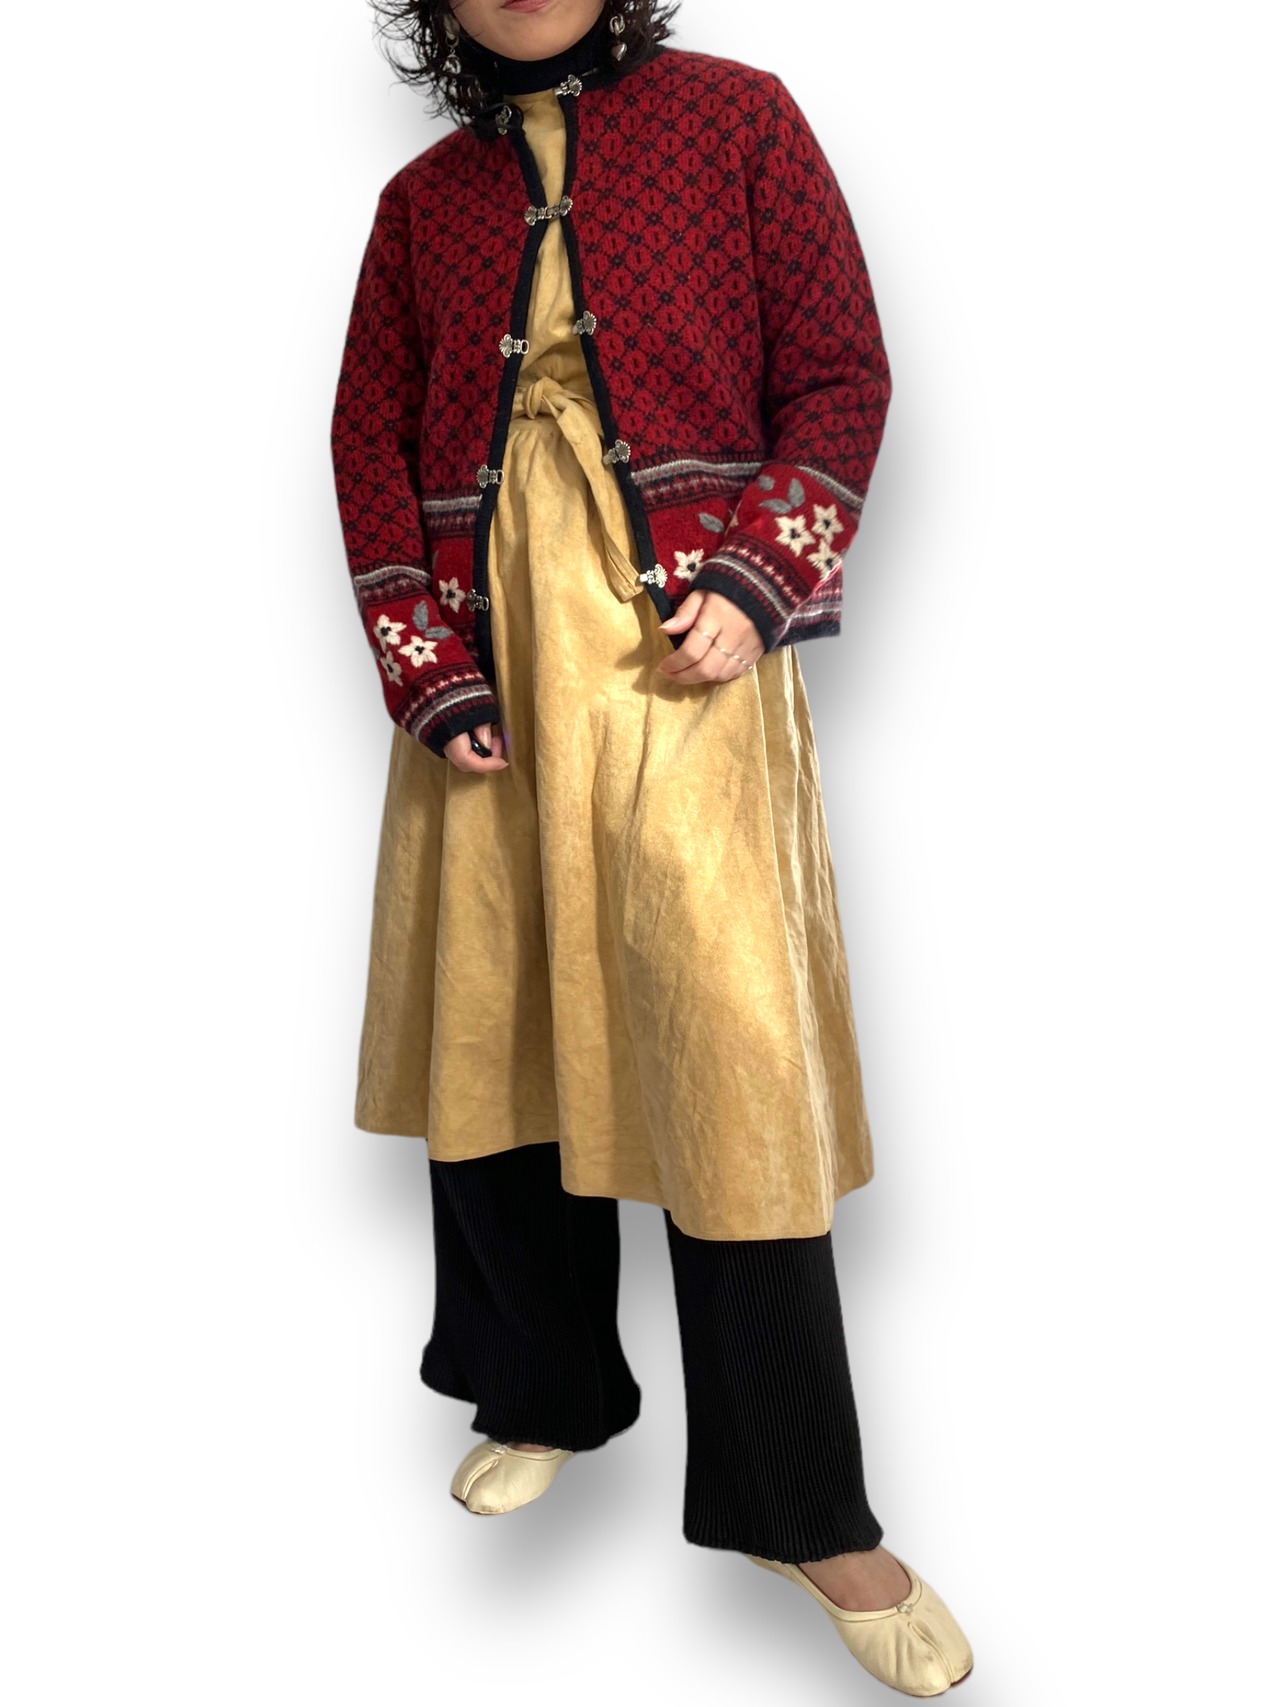 Tyrolean knit cardigan